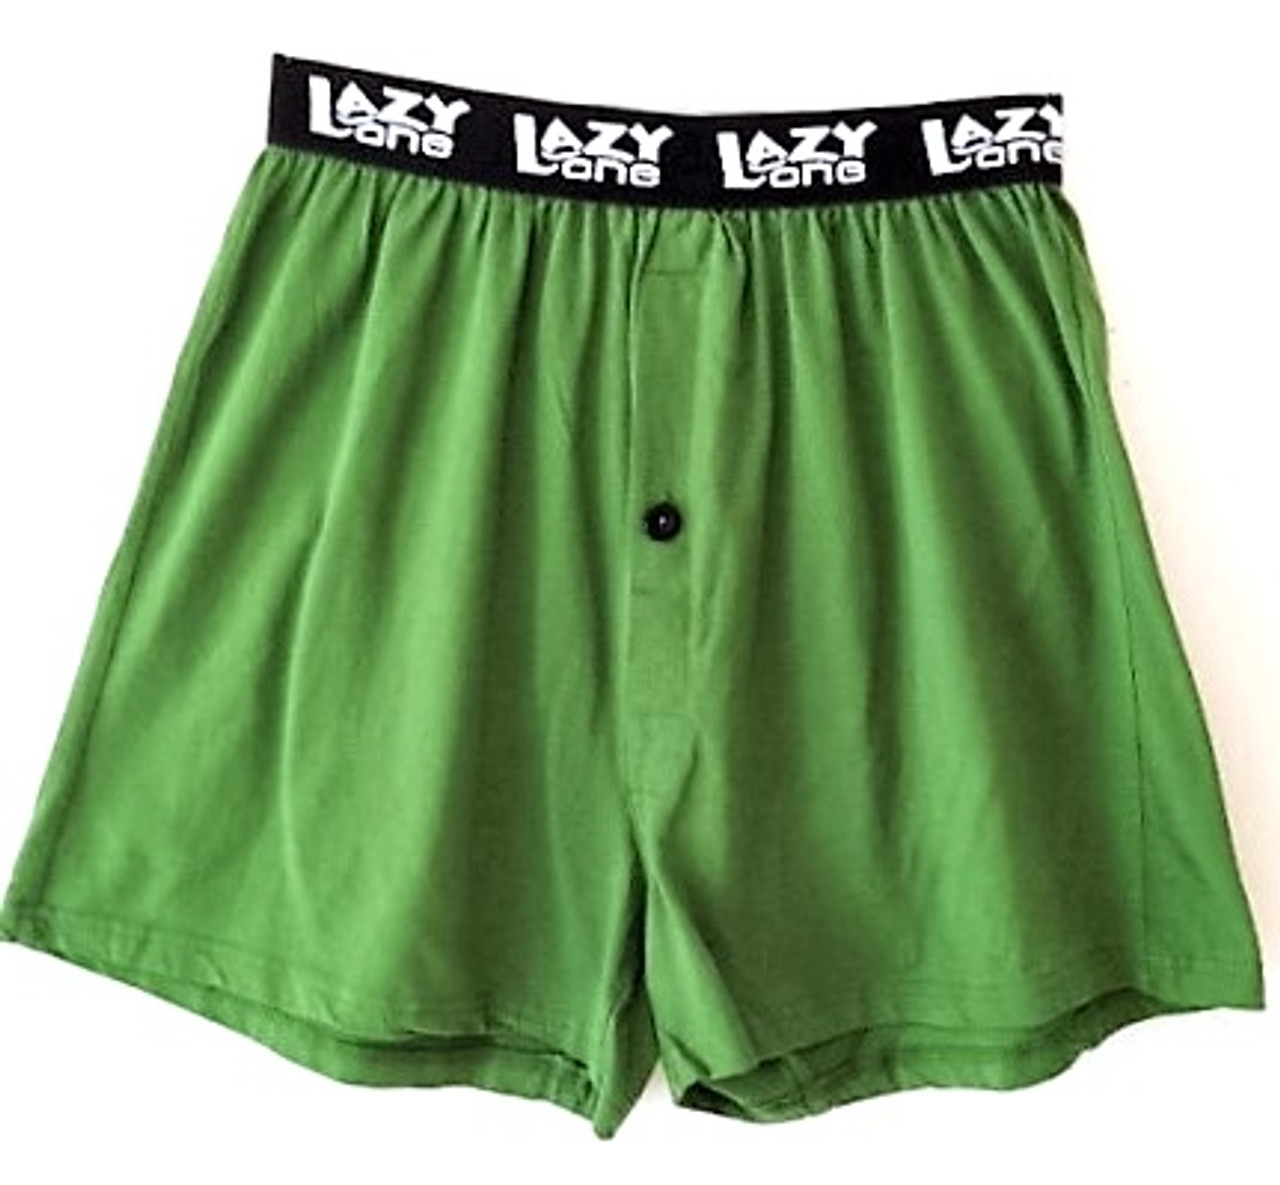 Buy Lazy One Funny Animal Boxers, Novelty Boxer Shorts, Humorous